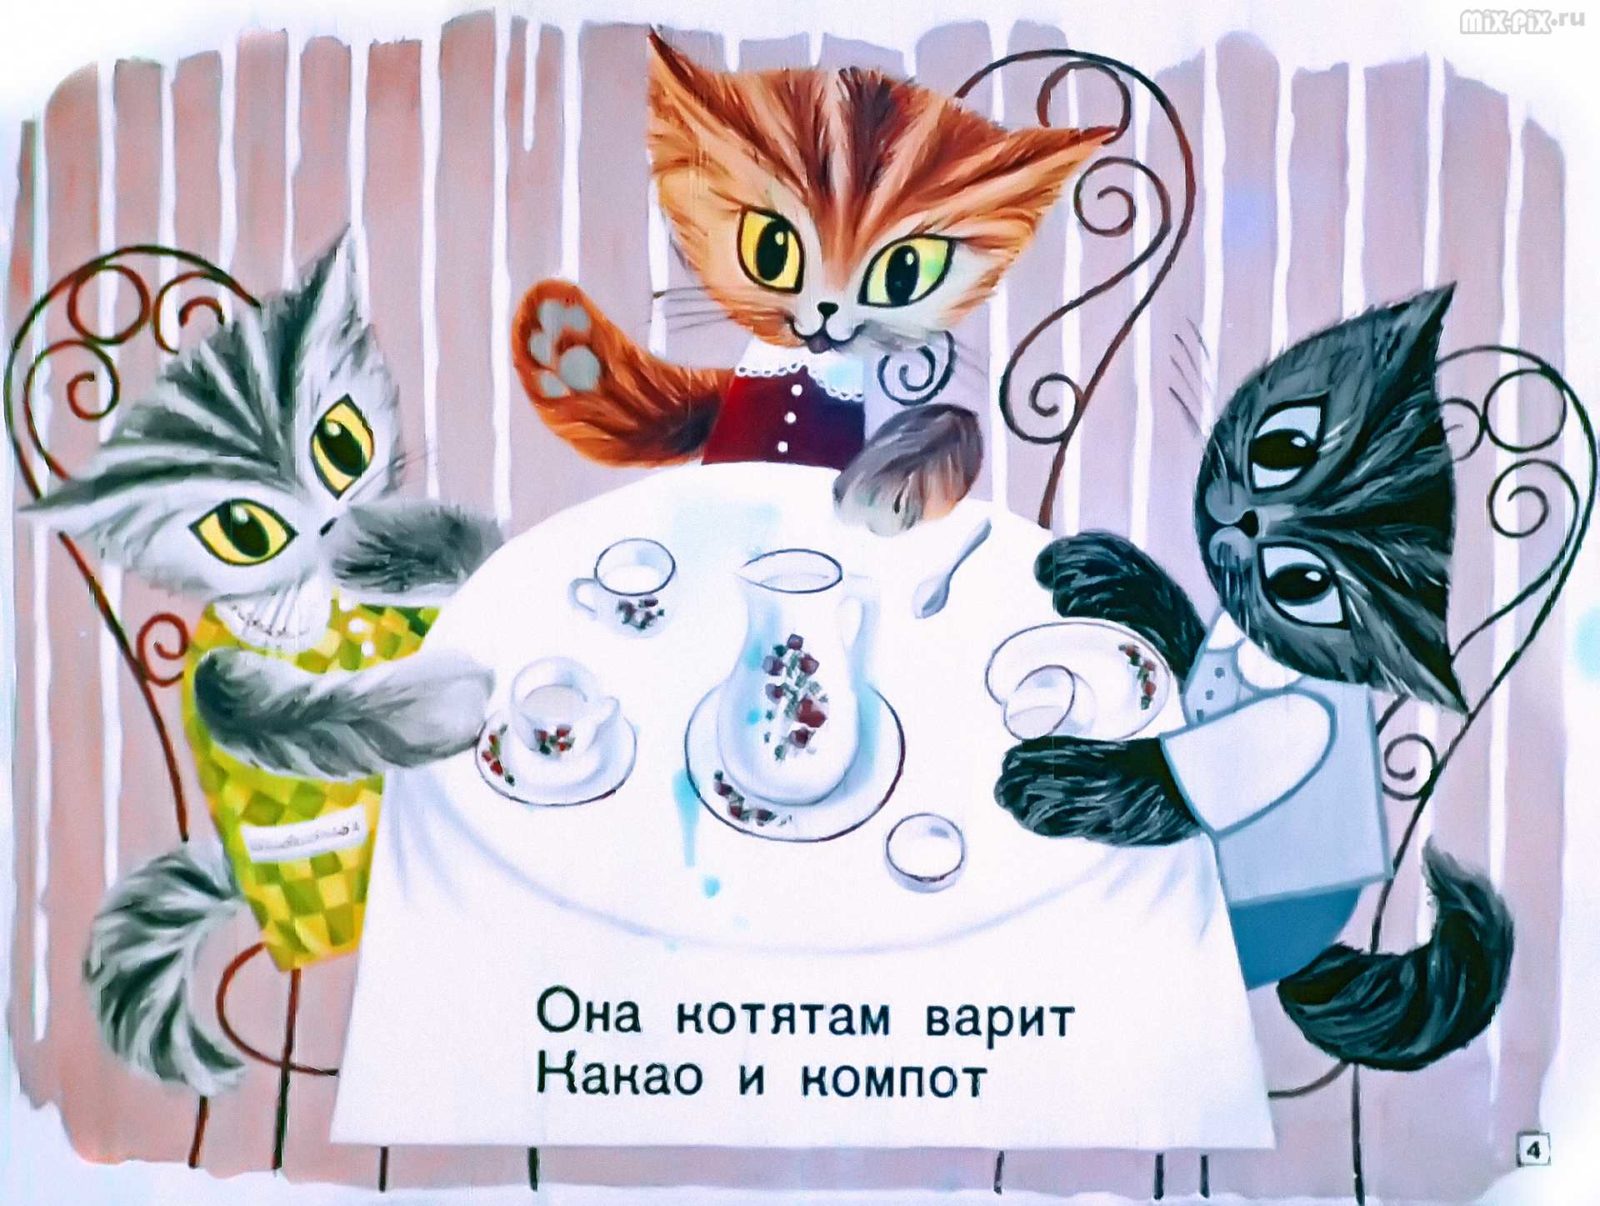 Касьянка, Том и Плут (1968) 21